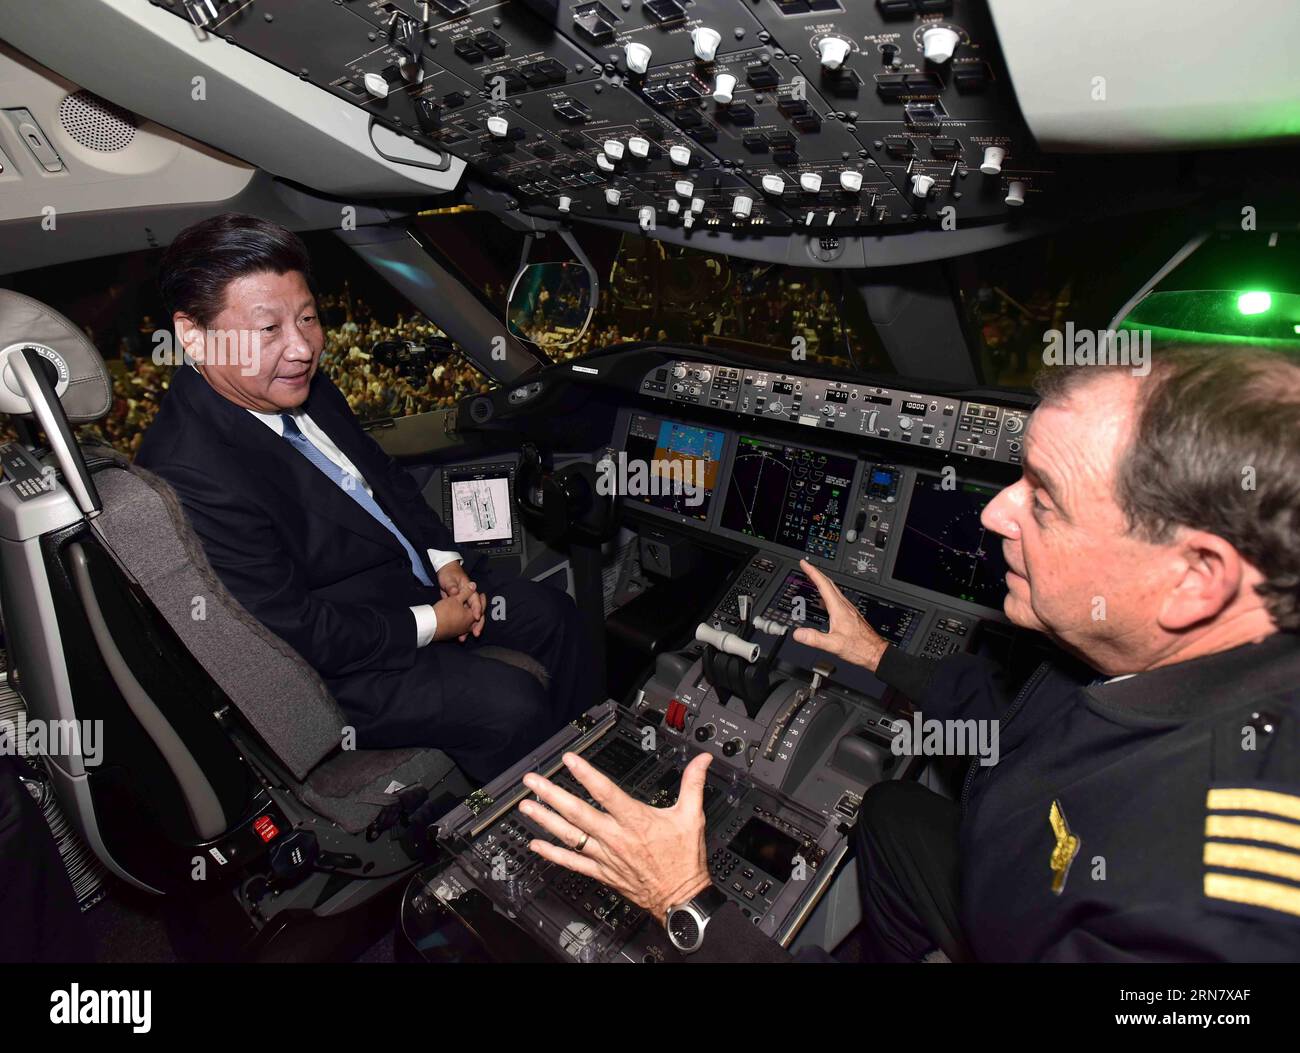 (150923) -- SEATTLE, 23. September 2015 -- der chinesische Präsident Xi Jinping (L) unterhält sich mit einem Boeing-Mitarbeiter an Bord eines 787-Flugzeugs, das in Kürze bei seinem Besuch der kommerziellen Flugzeugfabrik der Boeing Company in Everett im US-Bundesstaat Washington am 23. September 2015 an die chinesische Xiamen Airlines geliefert wird. (wf) U.S.-SEATTLE-CHINA-XI JINPING-BOEING-VISIT LixTao PUBLICATIONxNOTxINxCHN Seattle 23. September 2015 chinesischer Präsident Xi Jinping l Chats mit einem Boeing-Mitarbeiter an Bord eines 787-Flugzeugs, das in Kürze während seines Besuchs bei der Boeing Company S Commercia an China S Xiamen Airlines geliefert wird Stockfoto